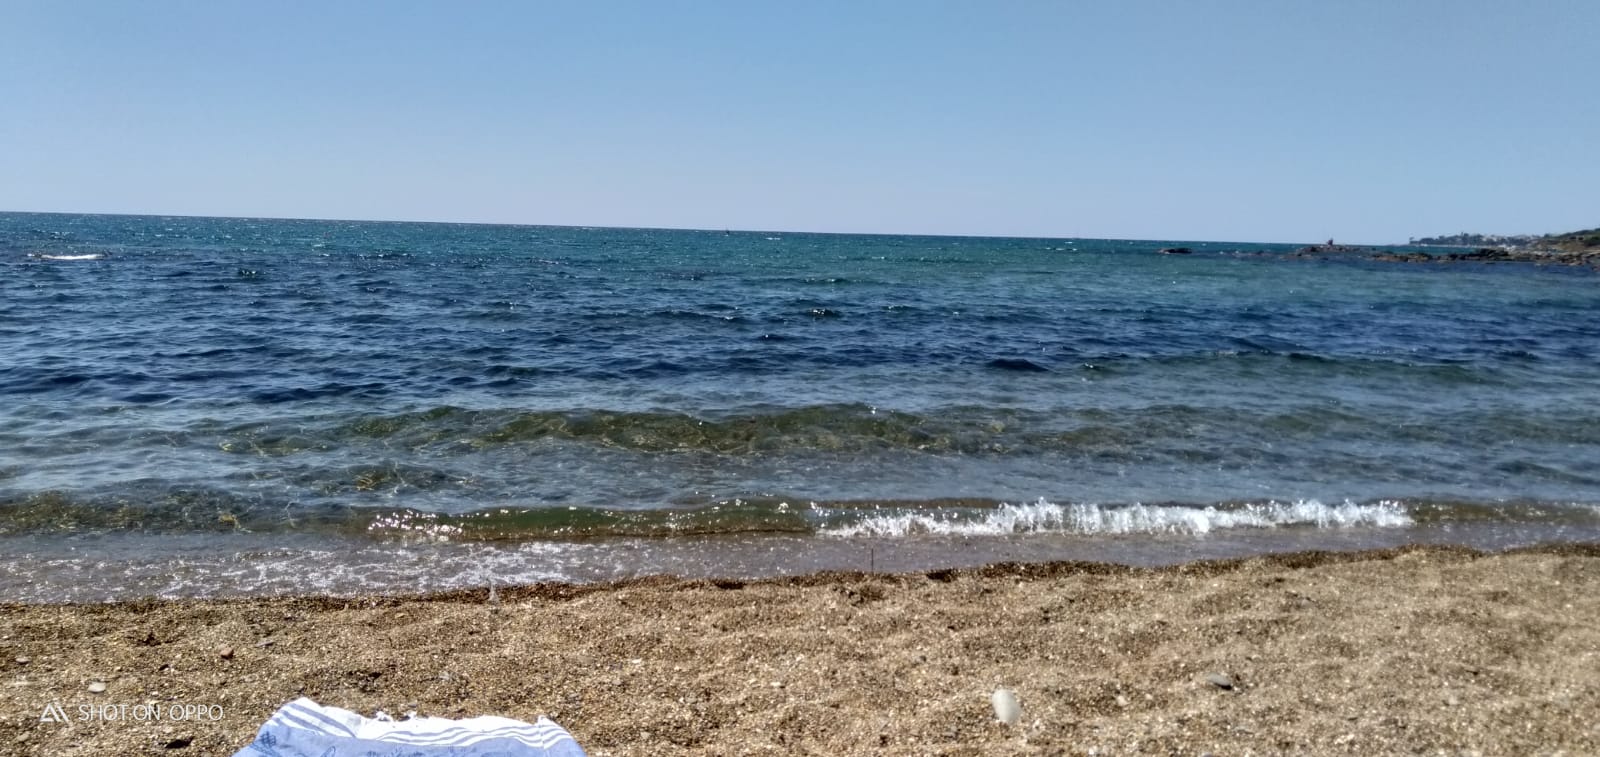 Foto von La spiaggia bella und die siedlung